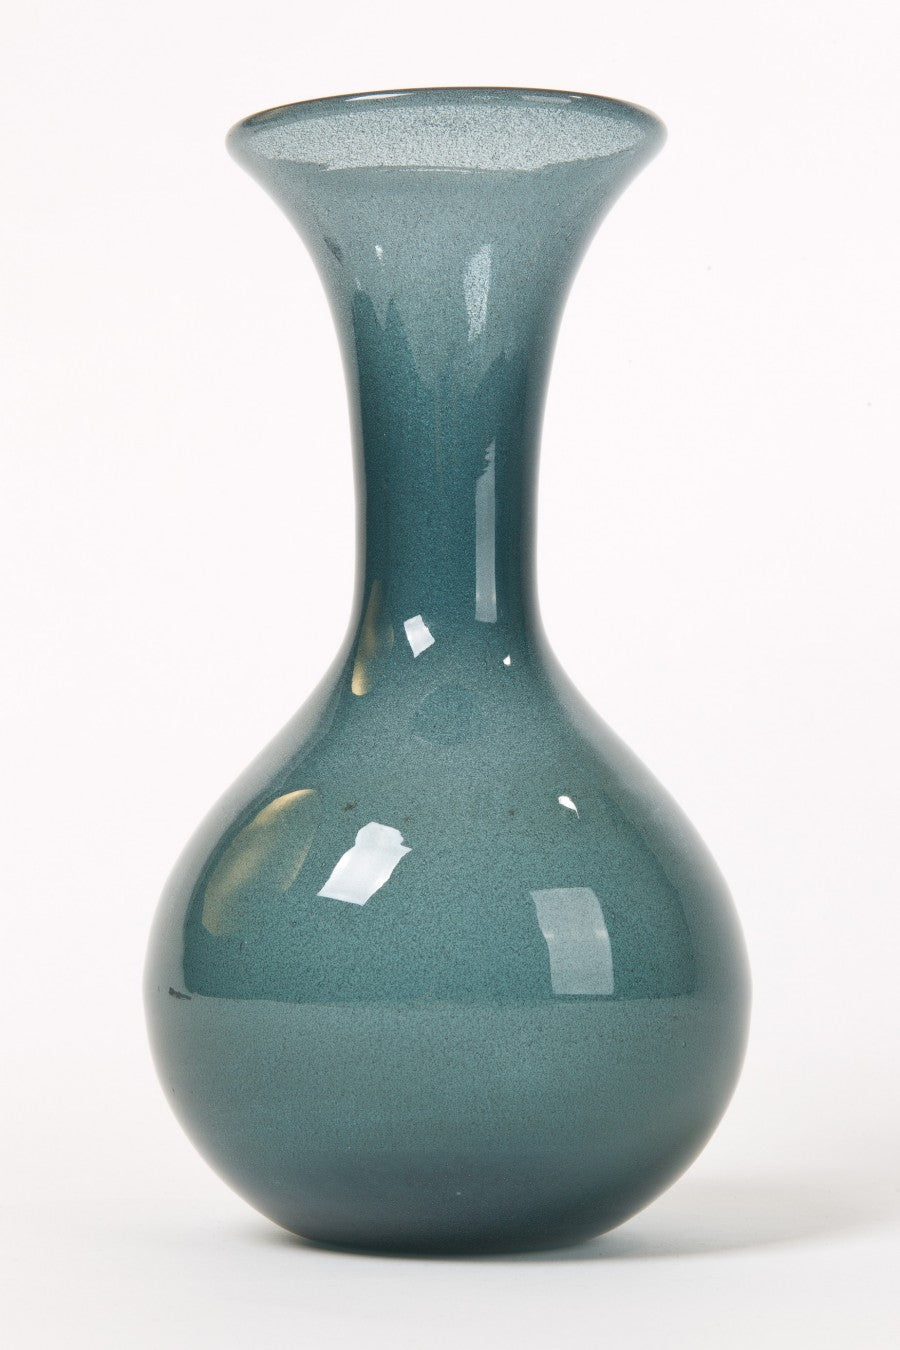 Valinnen Türrkise Vase von Boda von B. Valinnen